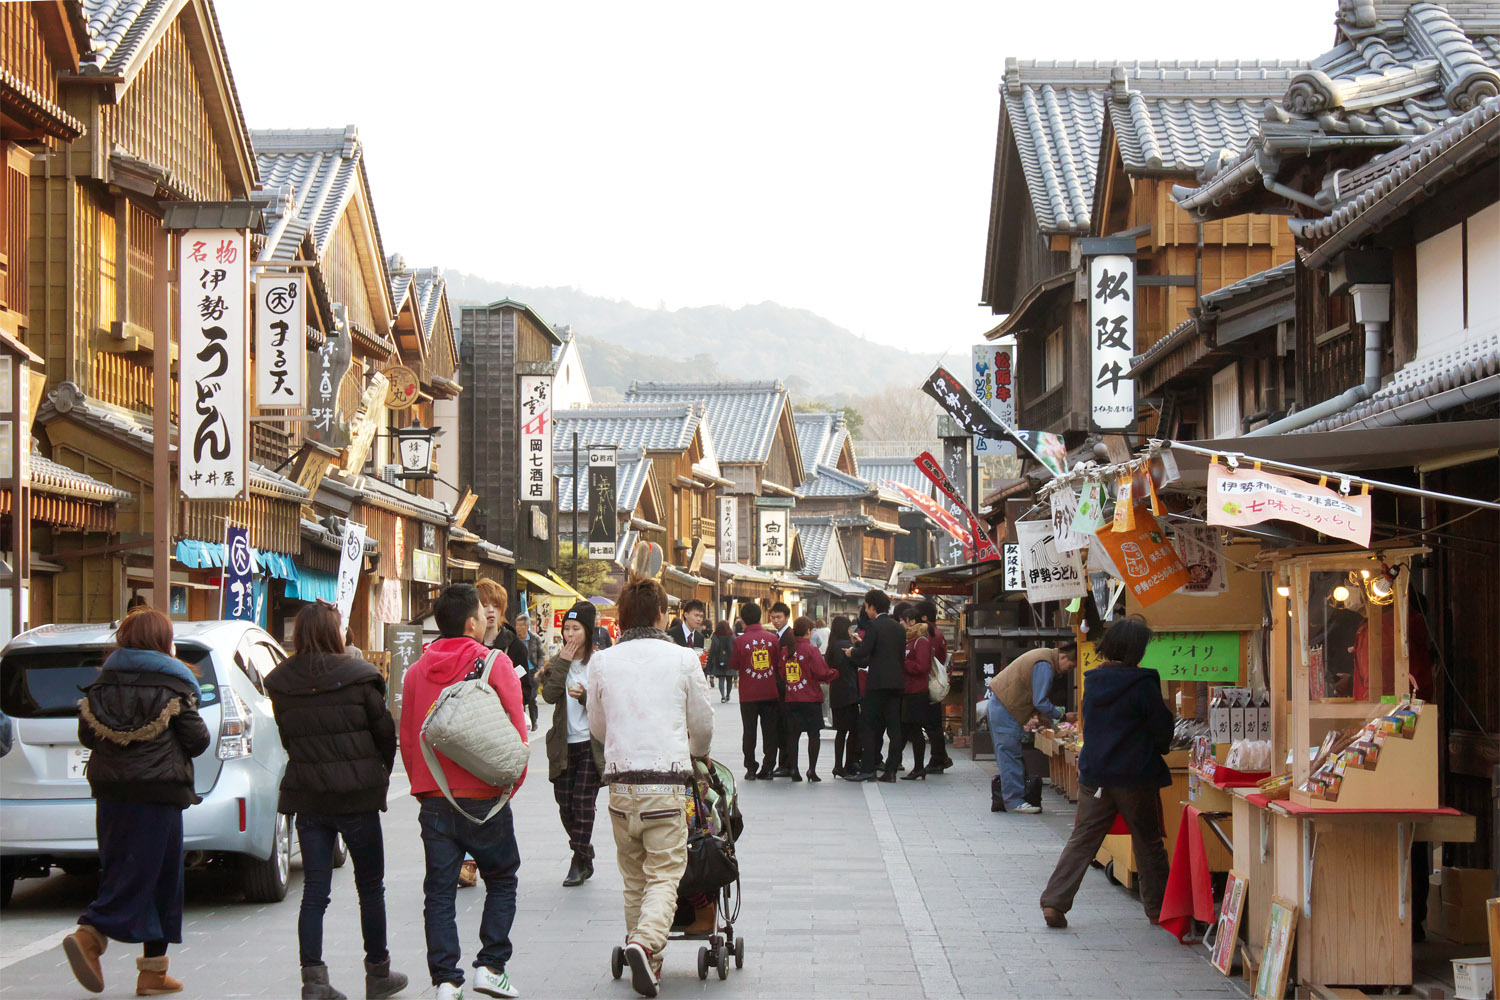 江戸時代の町並みを再現したという「おはらい町」は、レトロな雰囲気